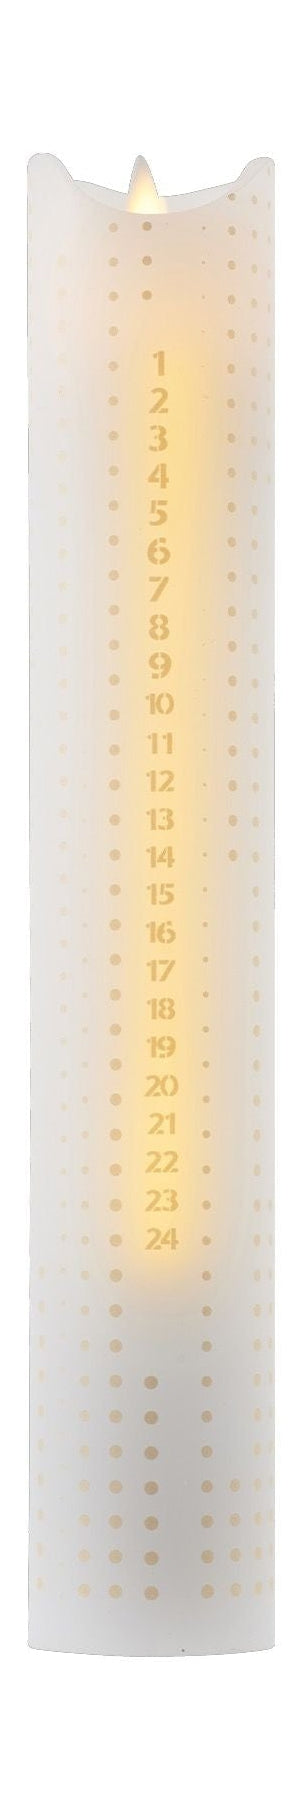 Svíčka Sirius Sara Calendar Ø5x H29cm, zlaté tečky